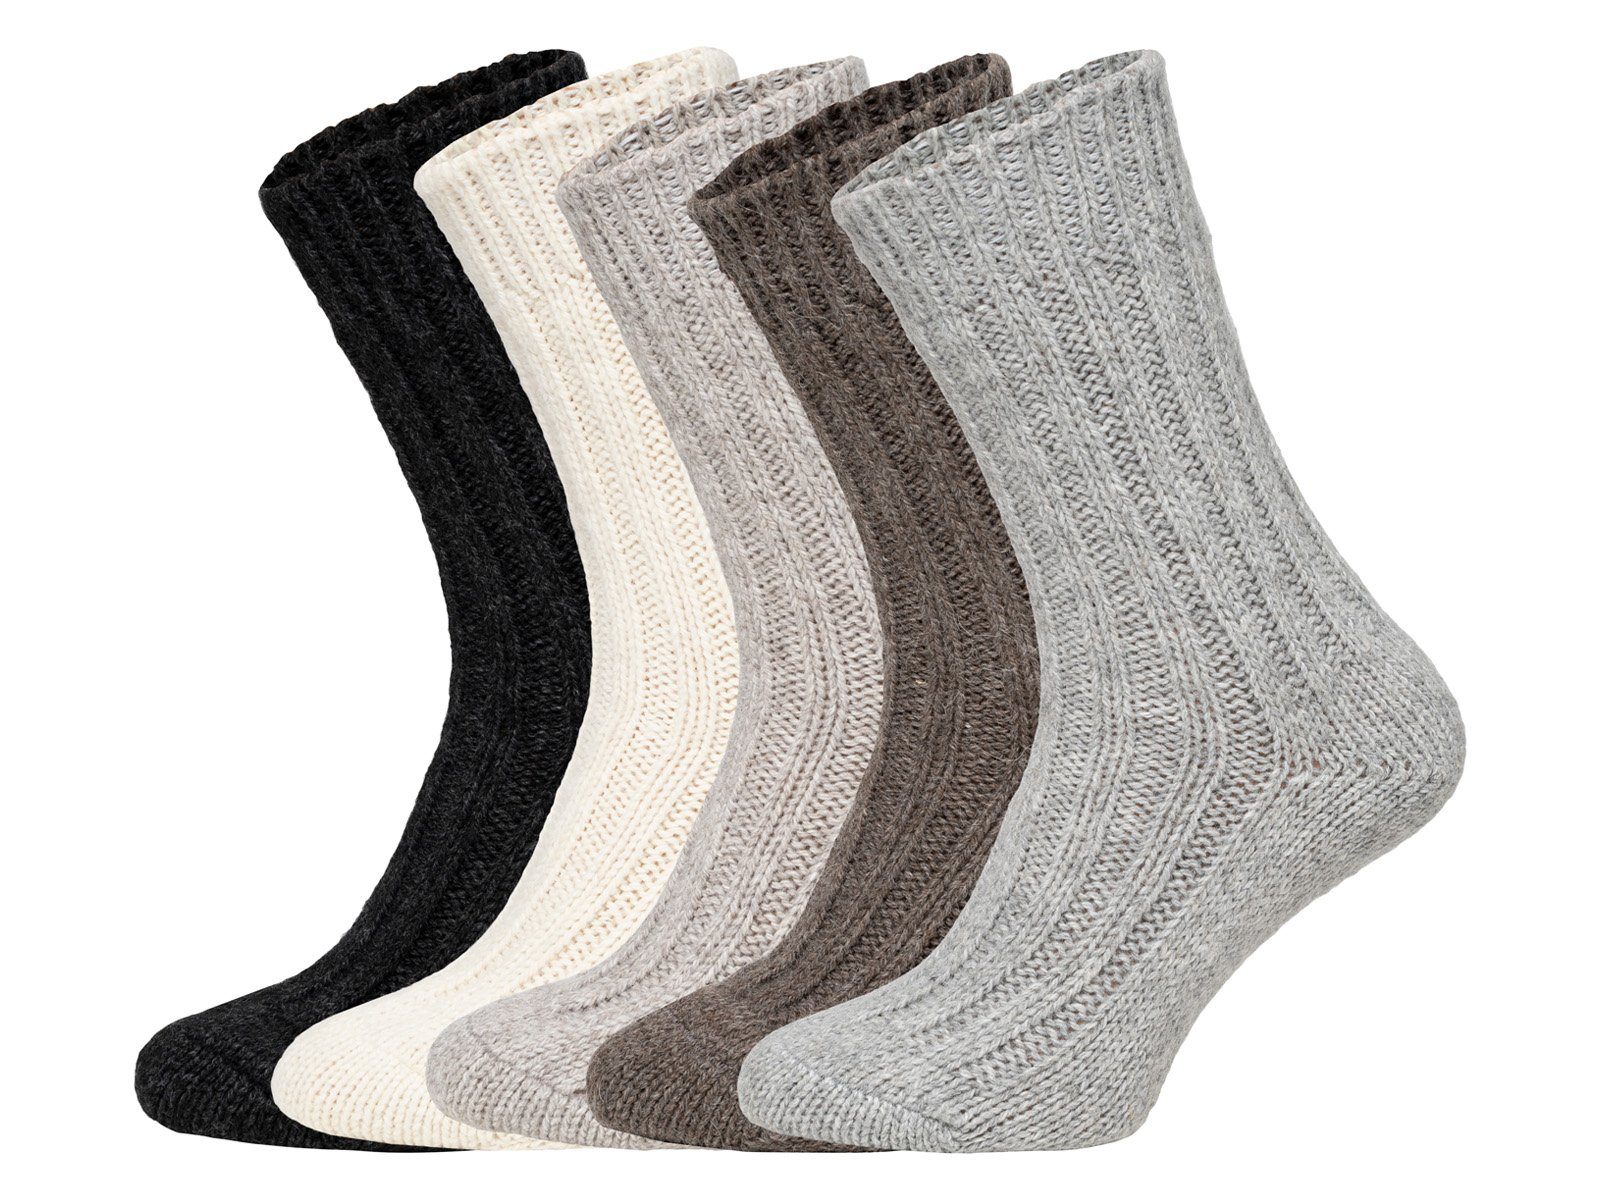 Alpakawolle mit warme Taupe/Braun 50% und Wollanteil Alpakawolle HomeOfSocks mit Socken Wollsocken Wollsocken Strapazierfähige und